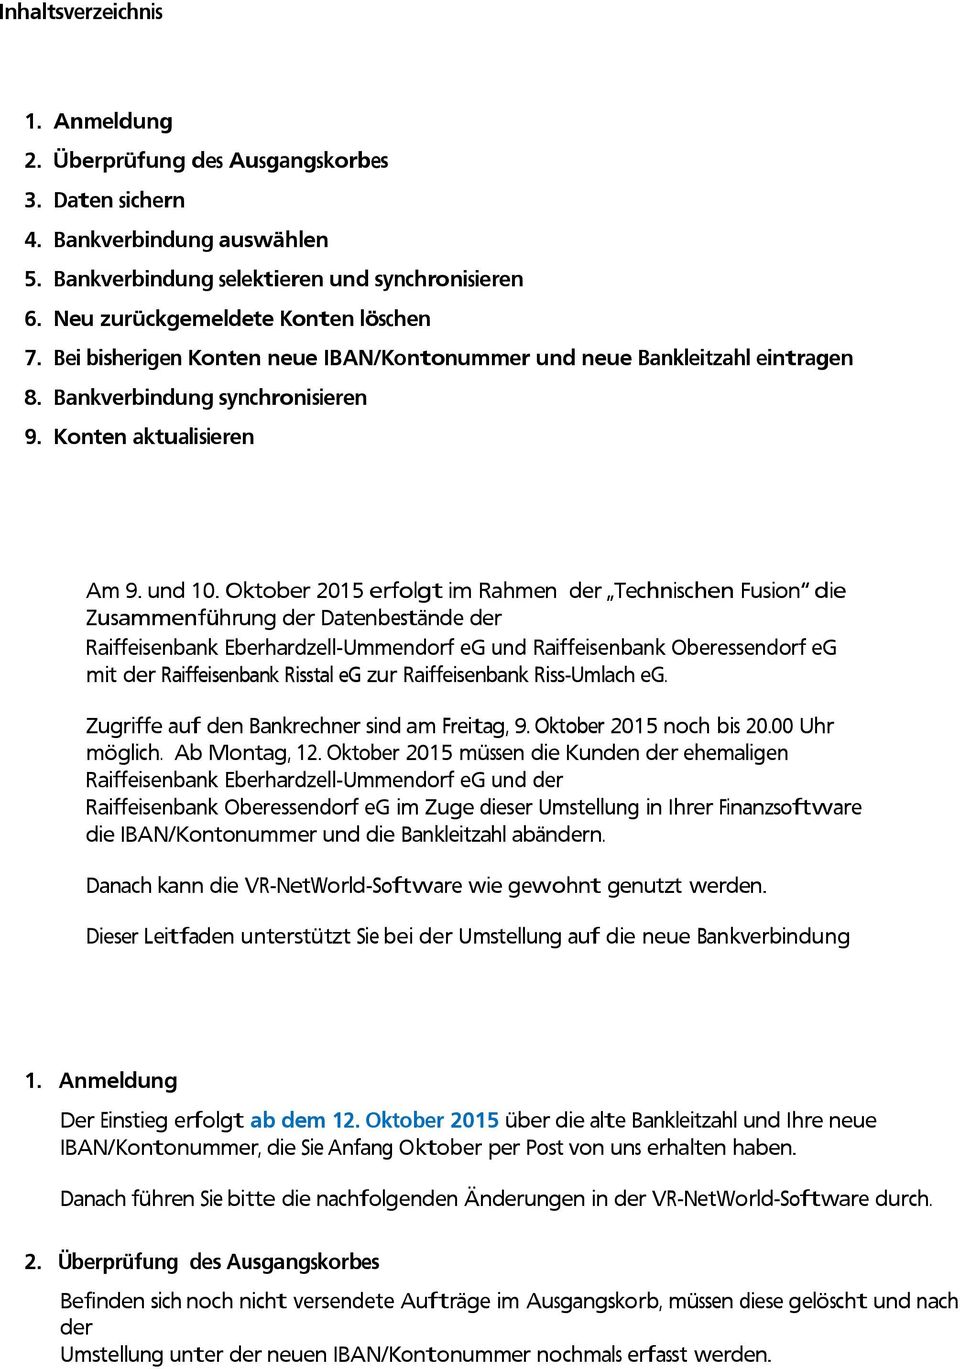 Oktober 2015 erfolgt im Rahmen der Technischen Fusion die Zusammenführung der Datenbestände der Raiffeisenbank Eberhardzell-Ummendorf eg und Raiffeisenbank Oberessendorf eg mit der Raiffeisenbank